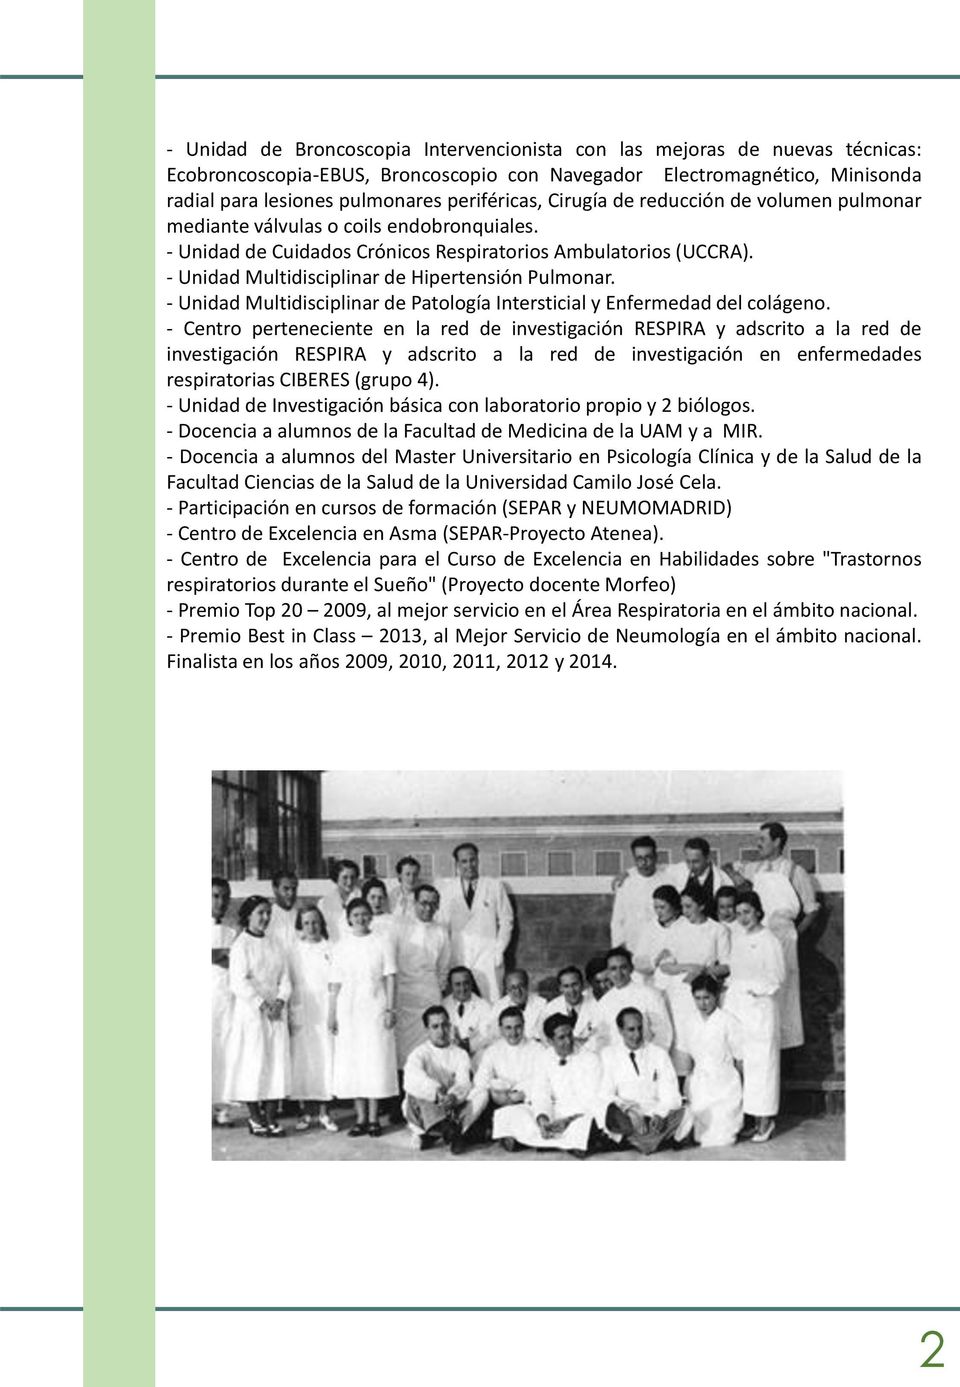 - Unidad Multidisciplinar de Hipertensión Pulmonar. - Unidad Multidisciplinar de Patología Intersticial y Enfermedad del colágeno.